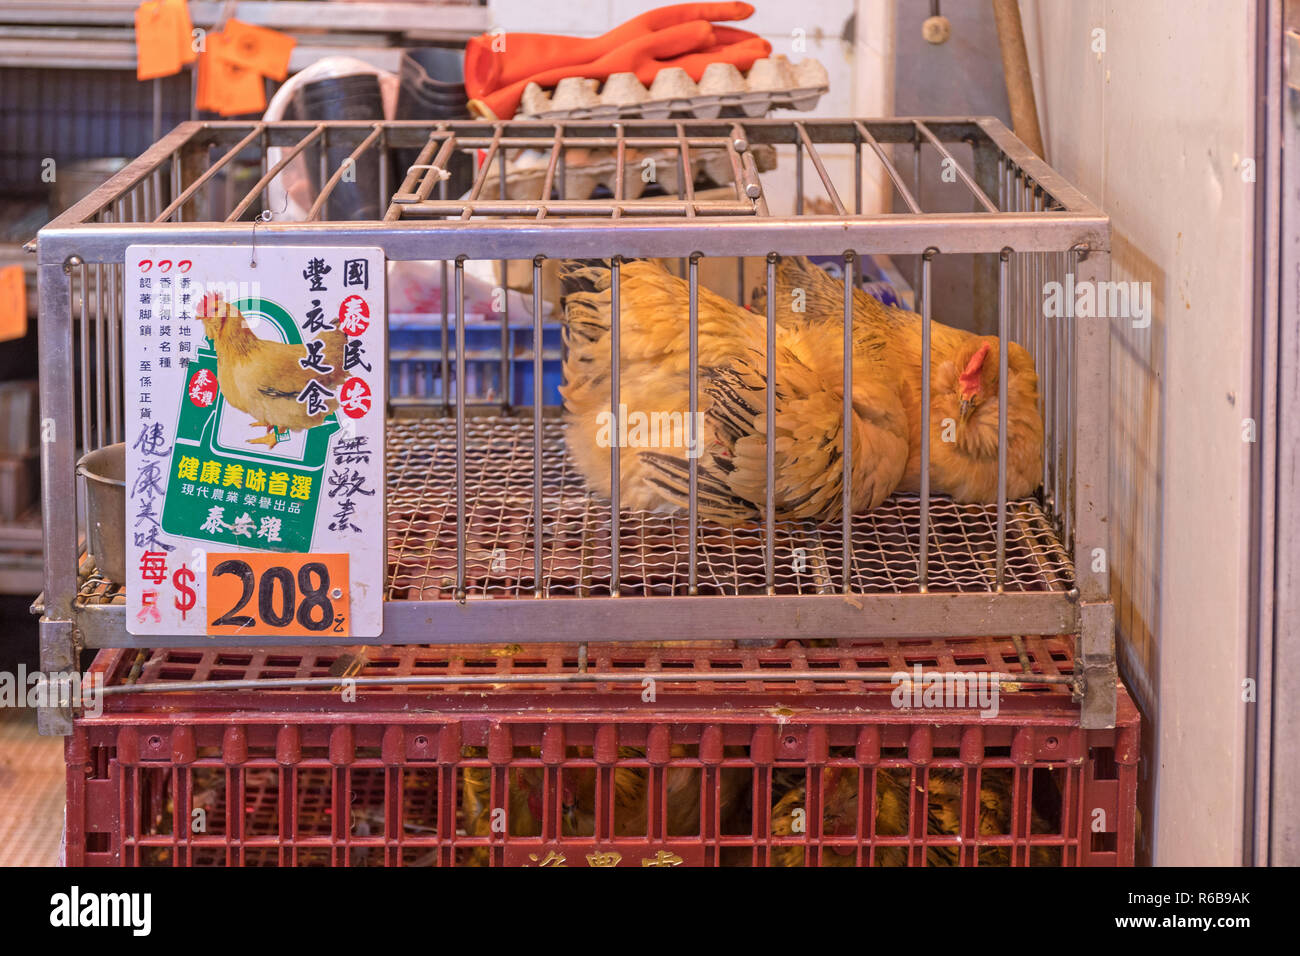 KOWLOON, HONG KONG - APRIL 22, 2017: Live Chickens at Poultry Shop at Local Market in Kowloon, Hong Kong. Stock Photo